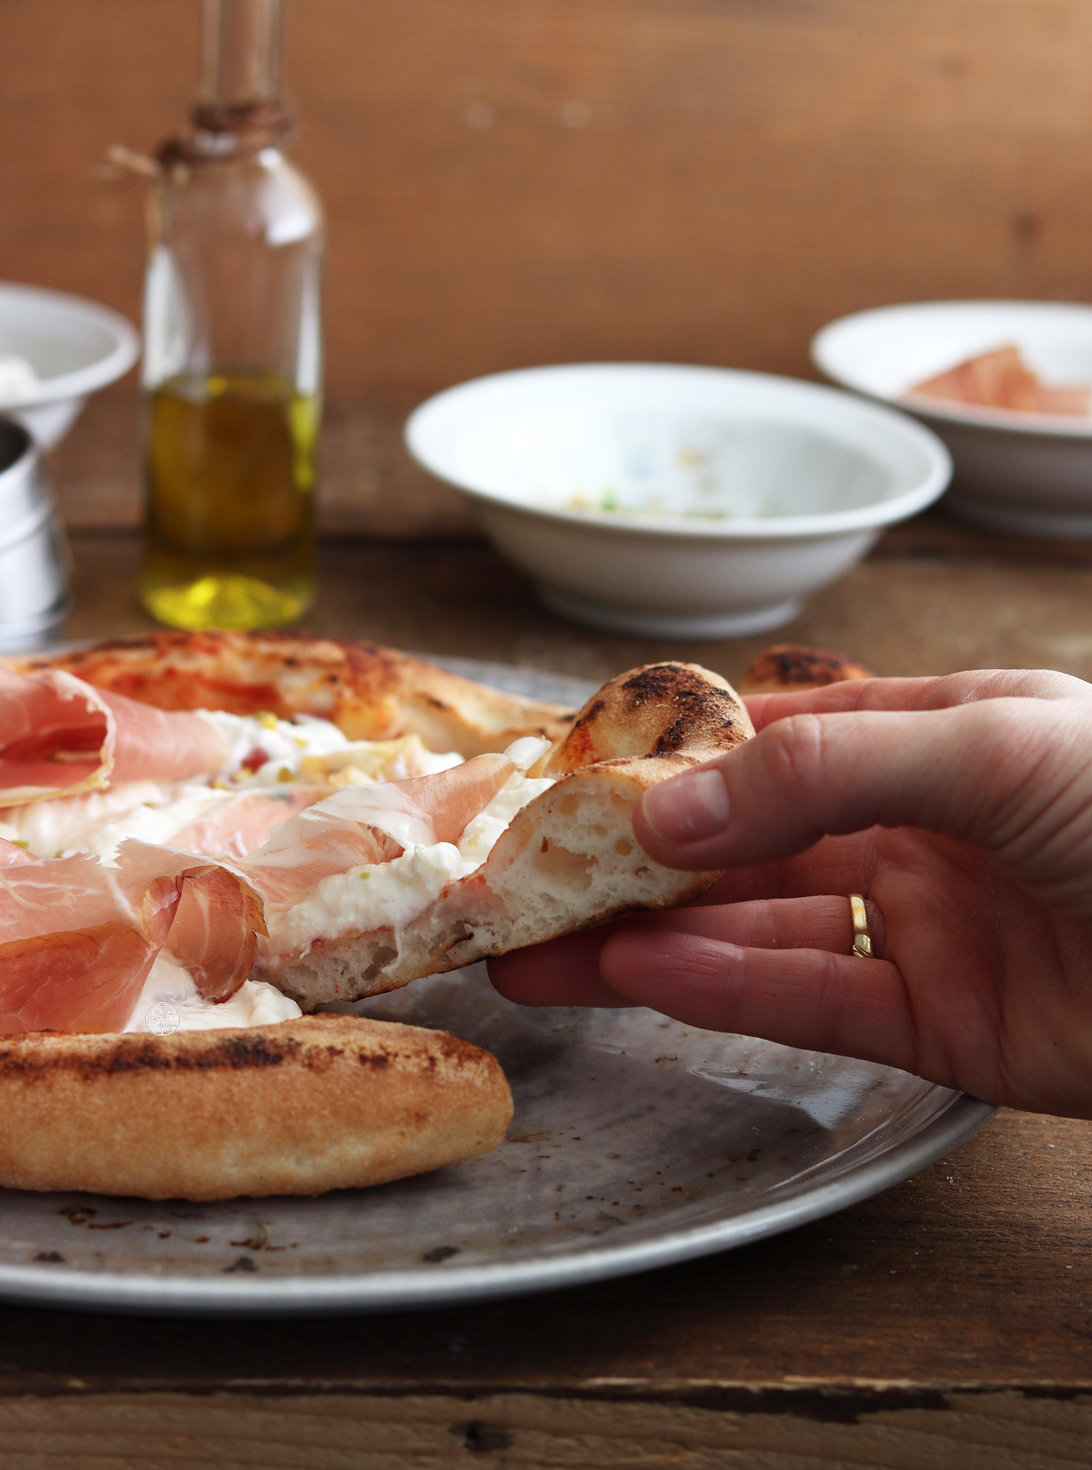 Pizza senza glutine con lievito madre essiccato Ori di Sicilia - La Cassata Celiaca